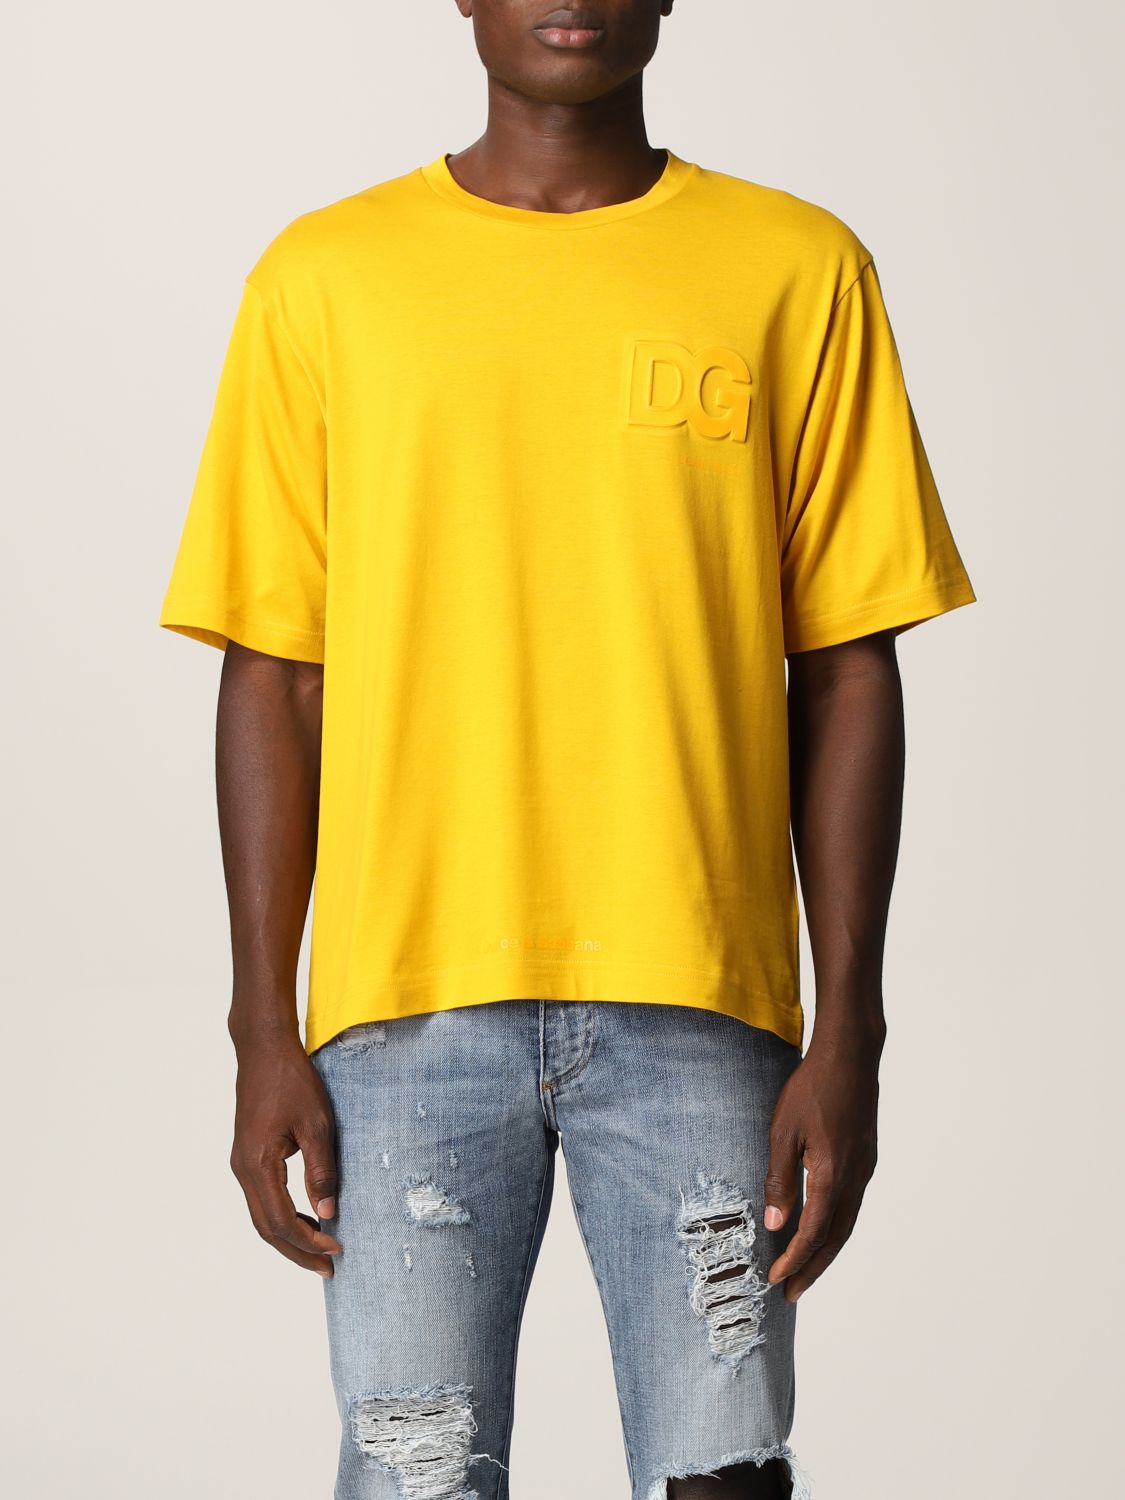 DOLCE & GABBANA: T-shirt with DG logo - Yellow | DOLCE & GABBANA t ...